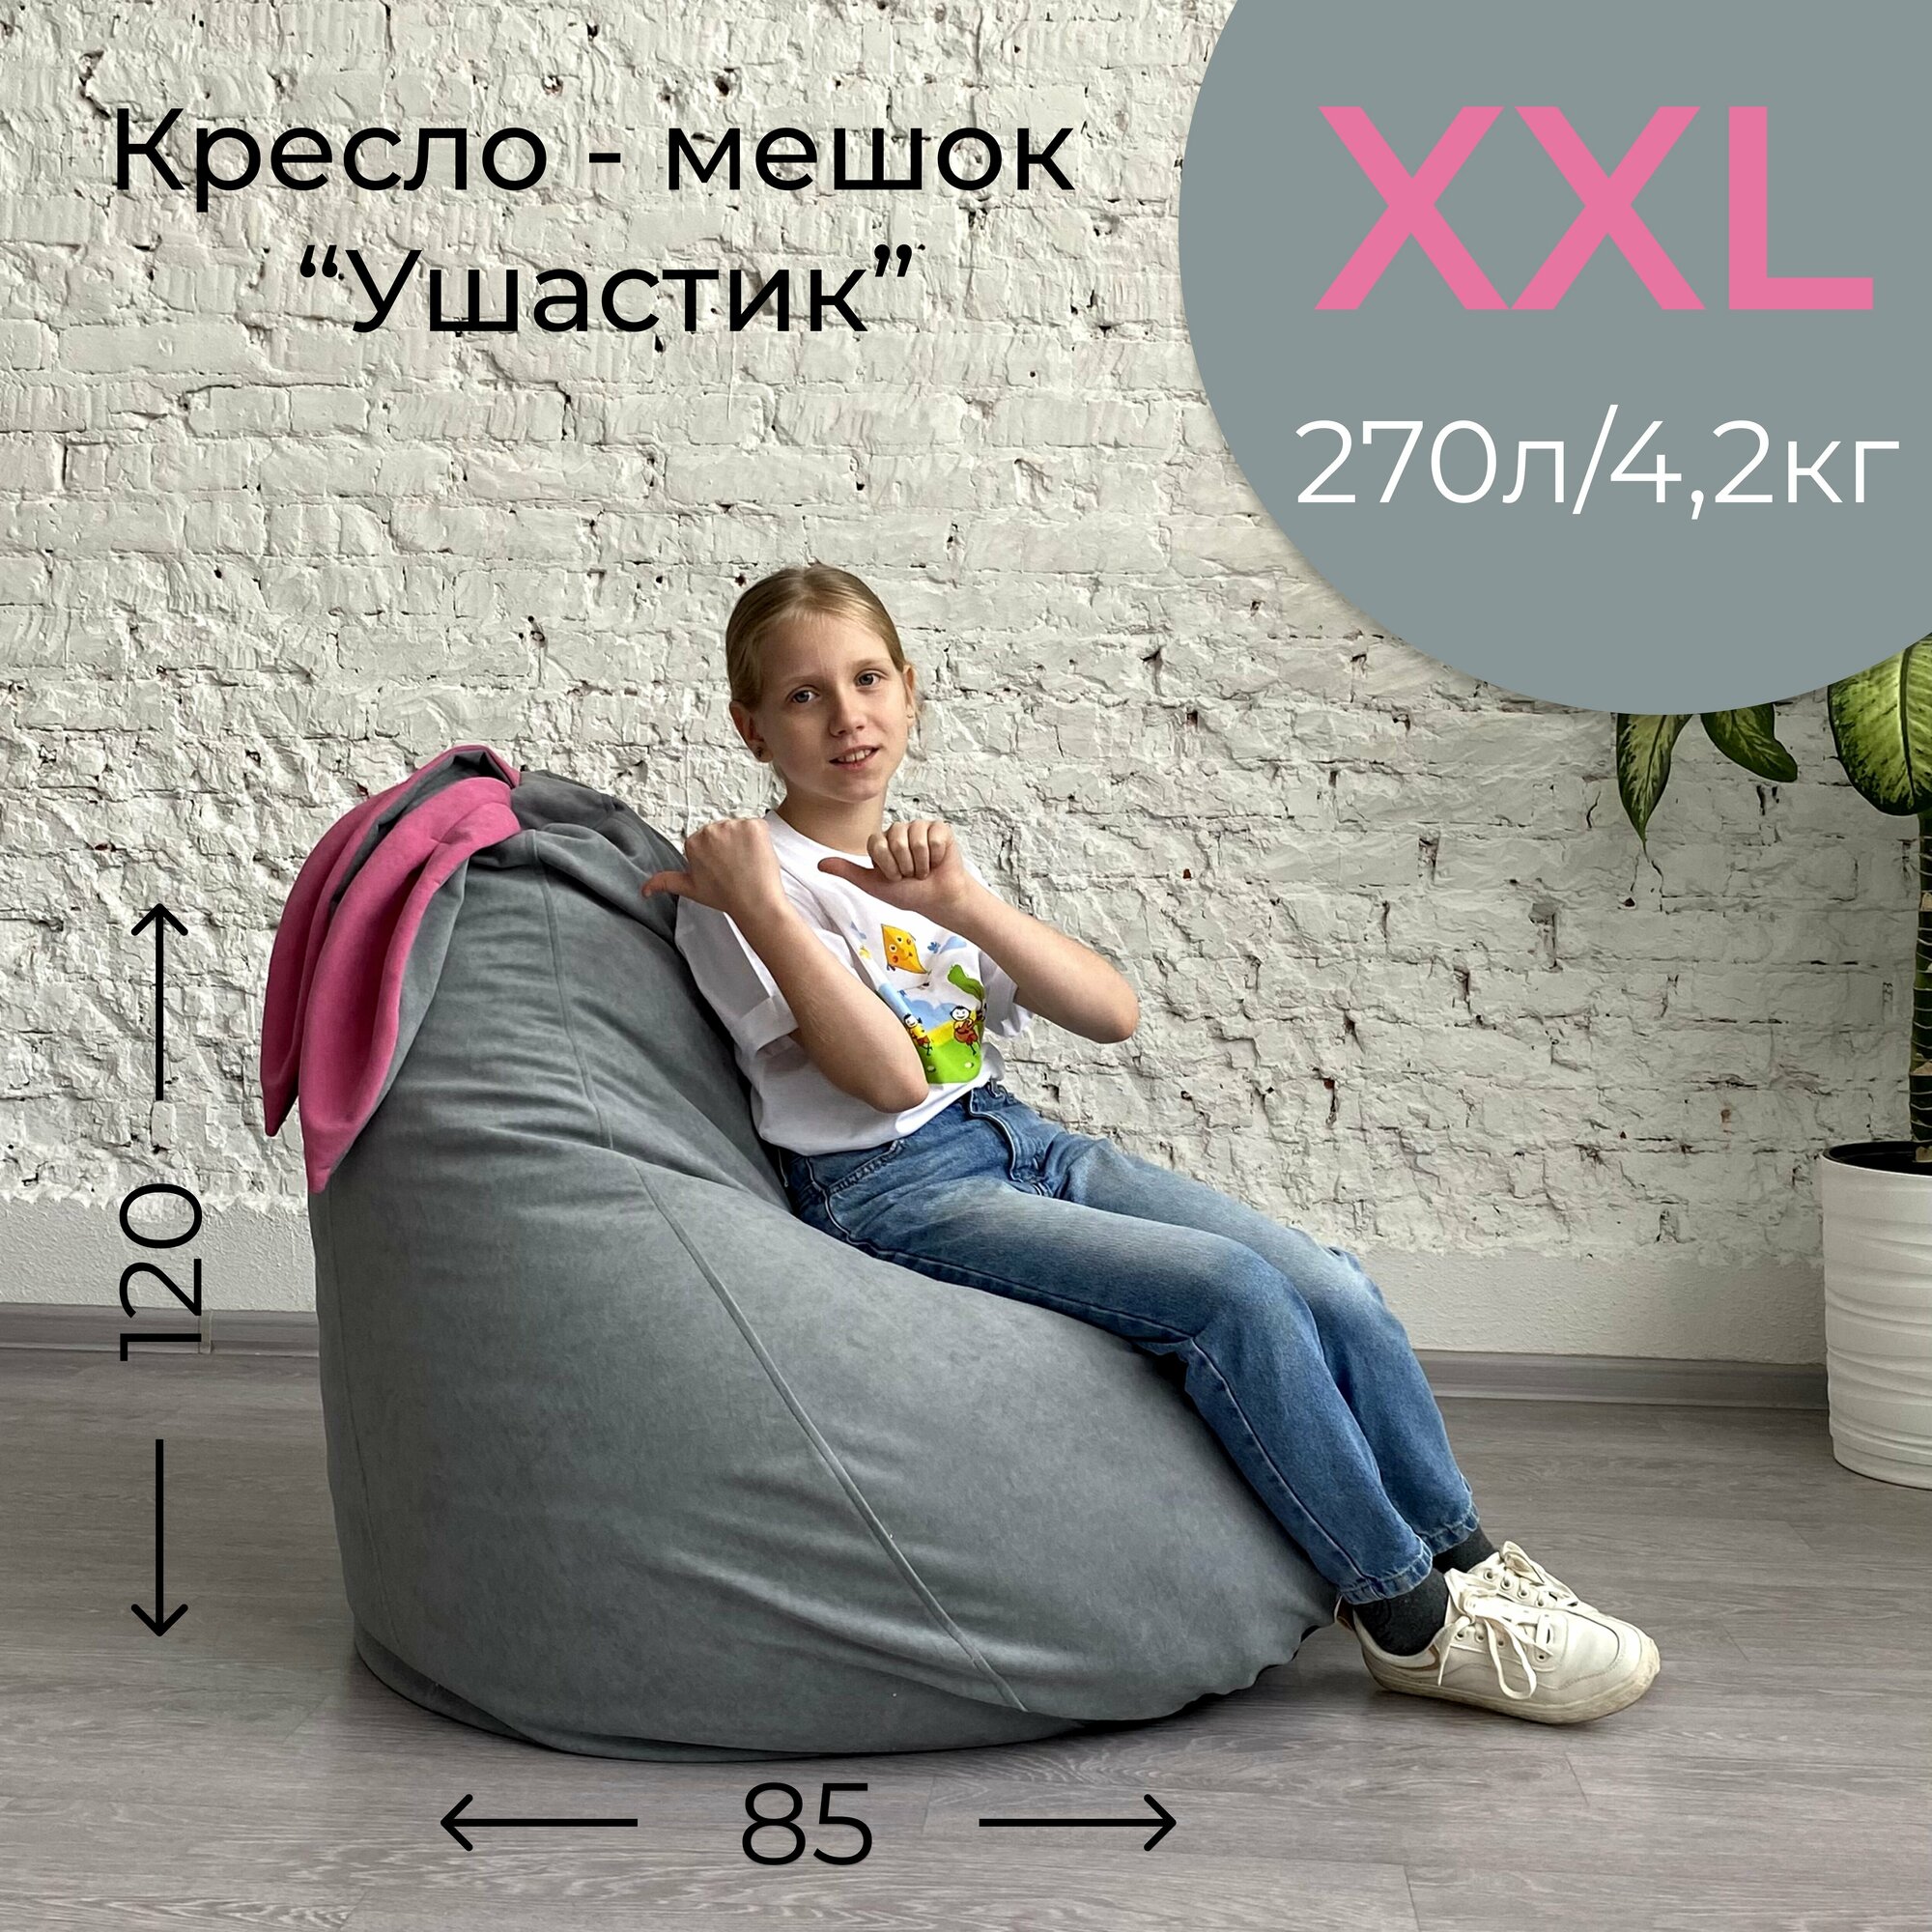 Кресло-груша для детей и взрослых АртБинБэг «Ушастик», ткань "Велюр", светло-серый с розовыми ушами, размер XXL